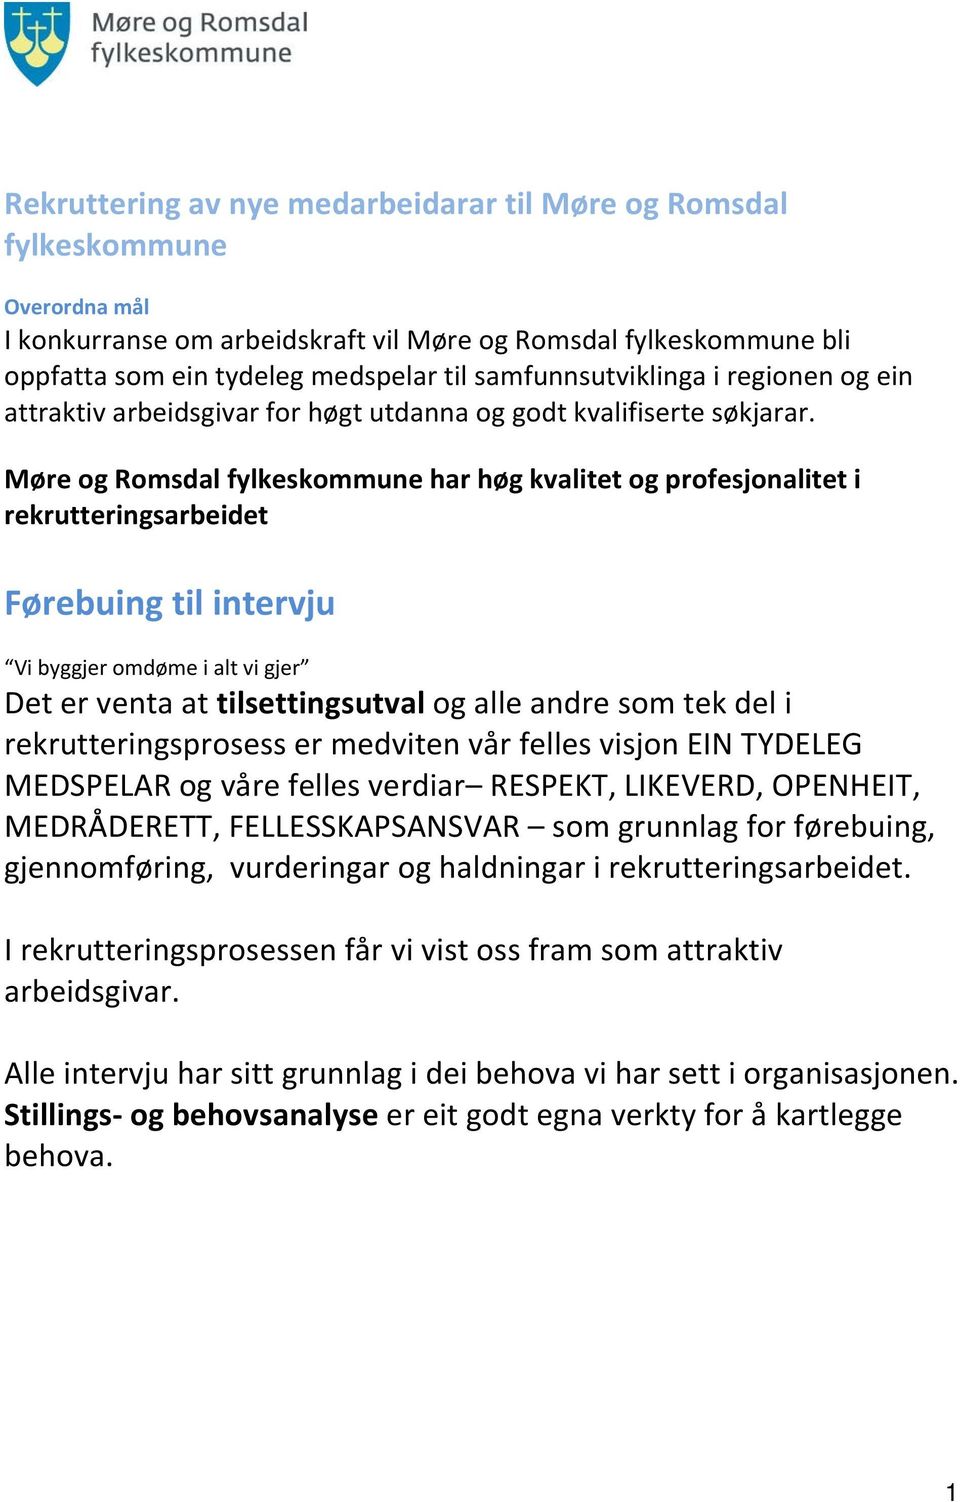 Møre og Romsdal fylkeskommune har høg kvalitet og profesjonalitet i rekrutteringsarbeidet Førebuing til intervju Vi byggjer omdøme i alt vi gjer Det er venta at tilsettingsutval og alle andre som tek